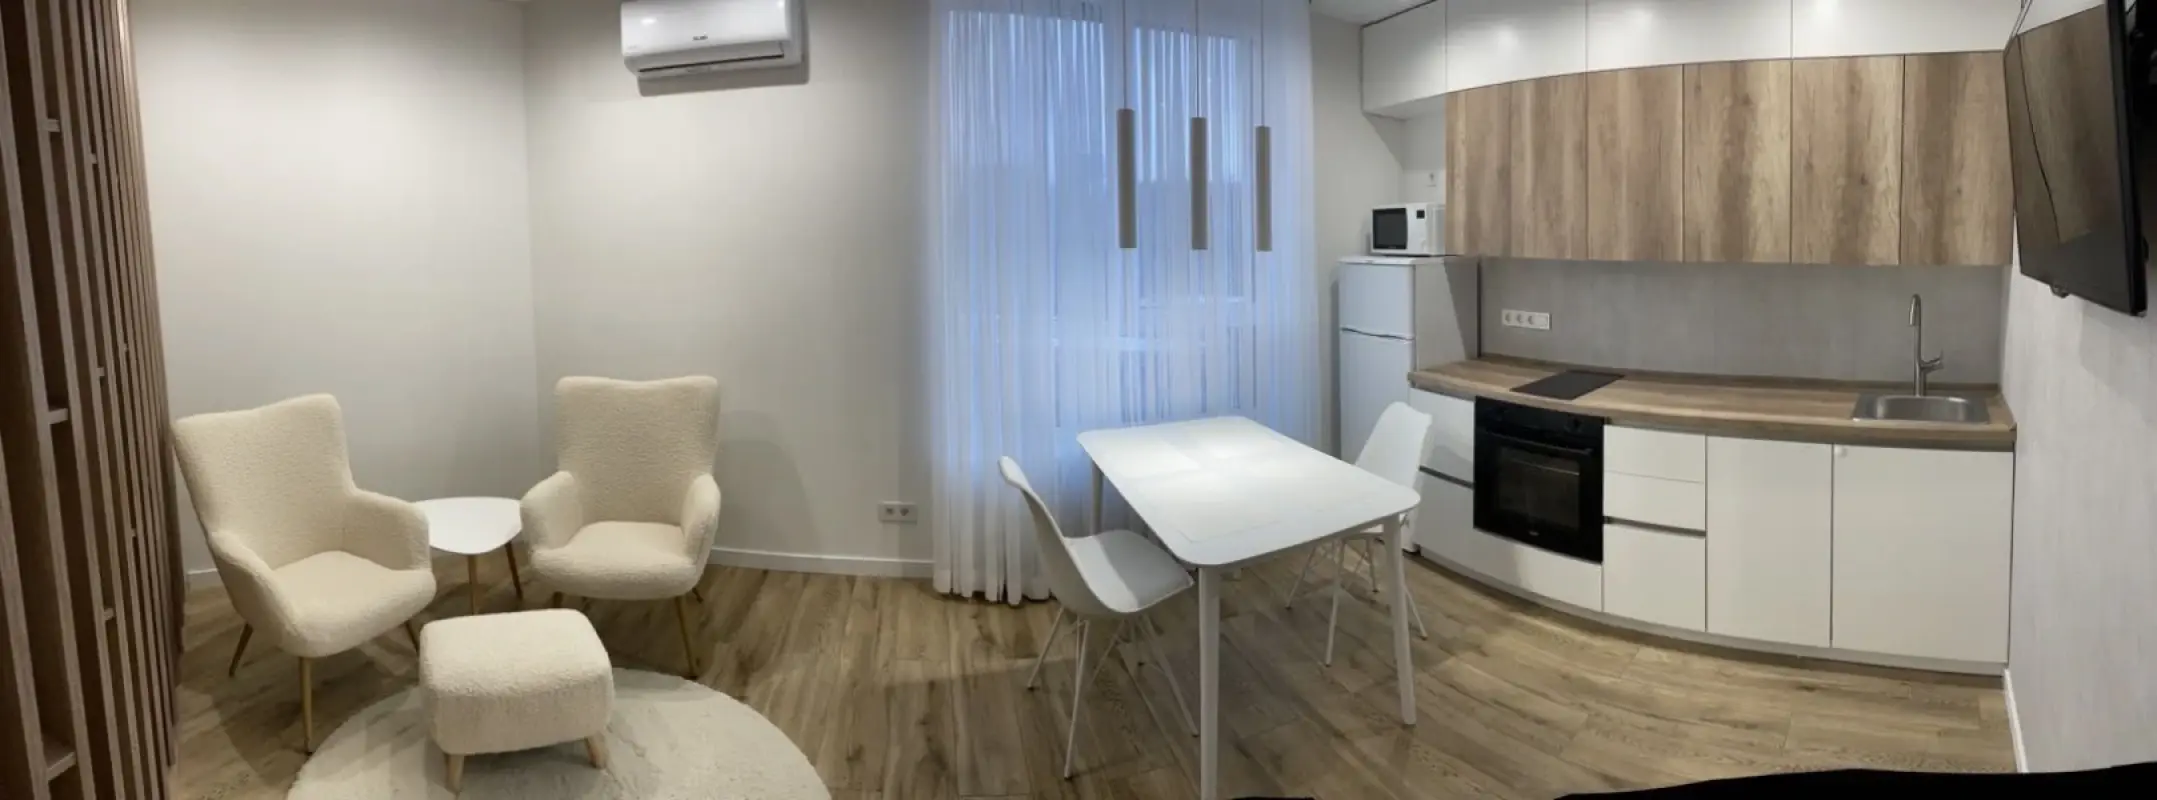 Apartment for rent - Hlybochytska Street